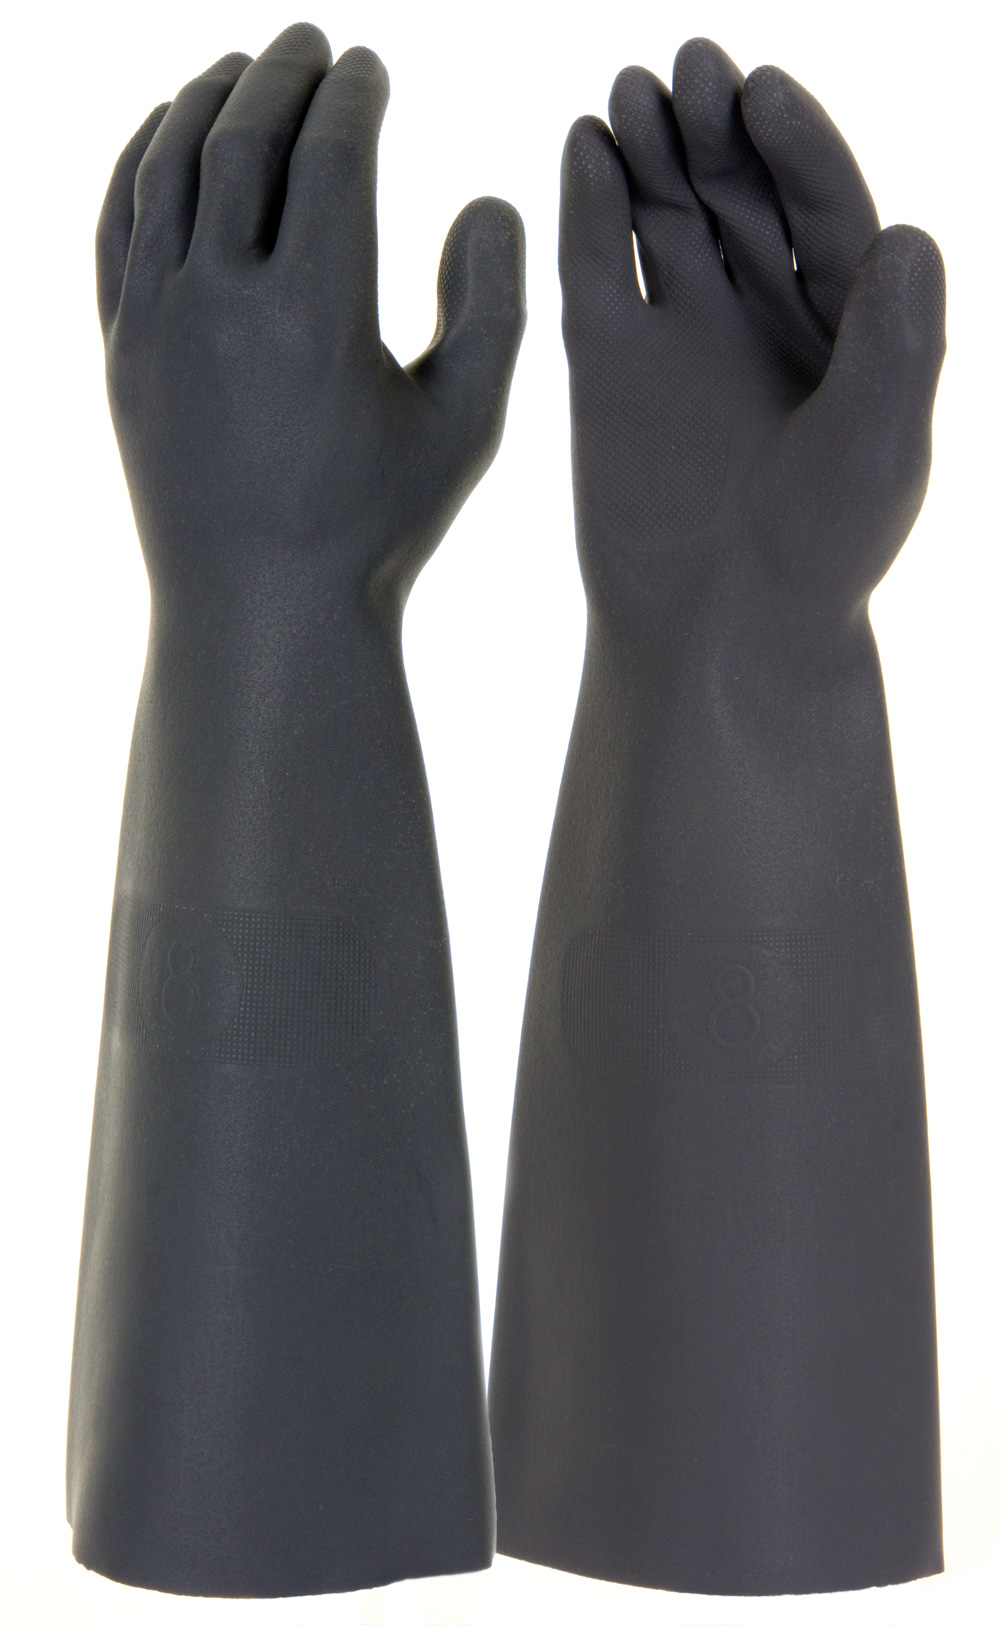 Ind 18" Gauntlet Latex Glove Size 10